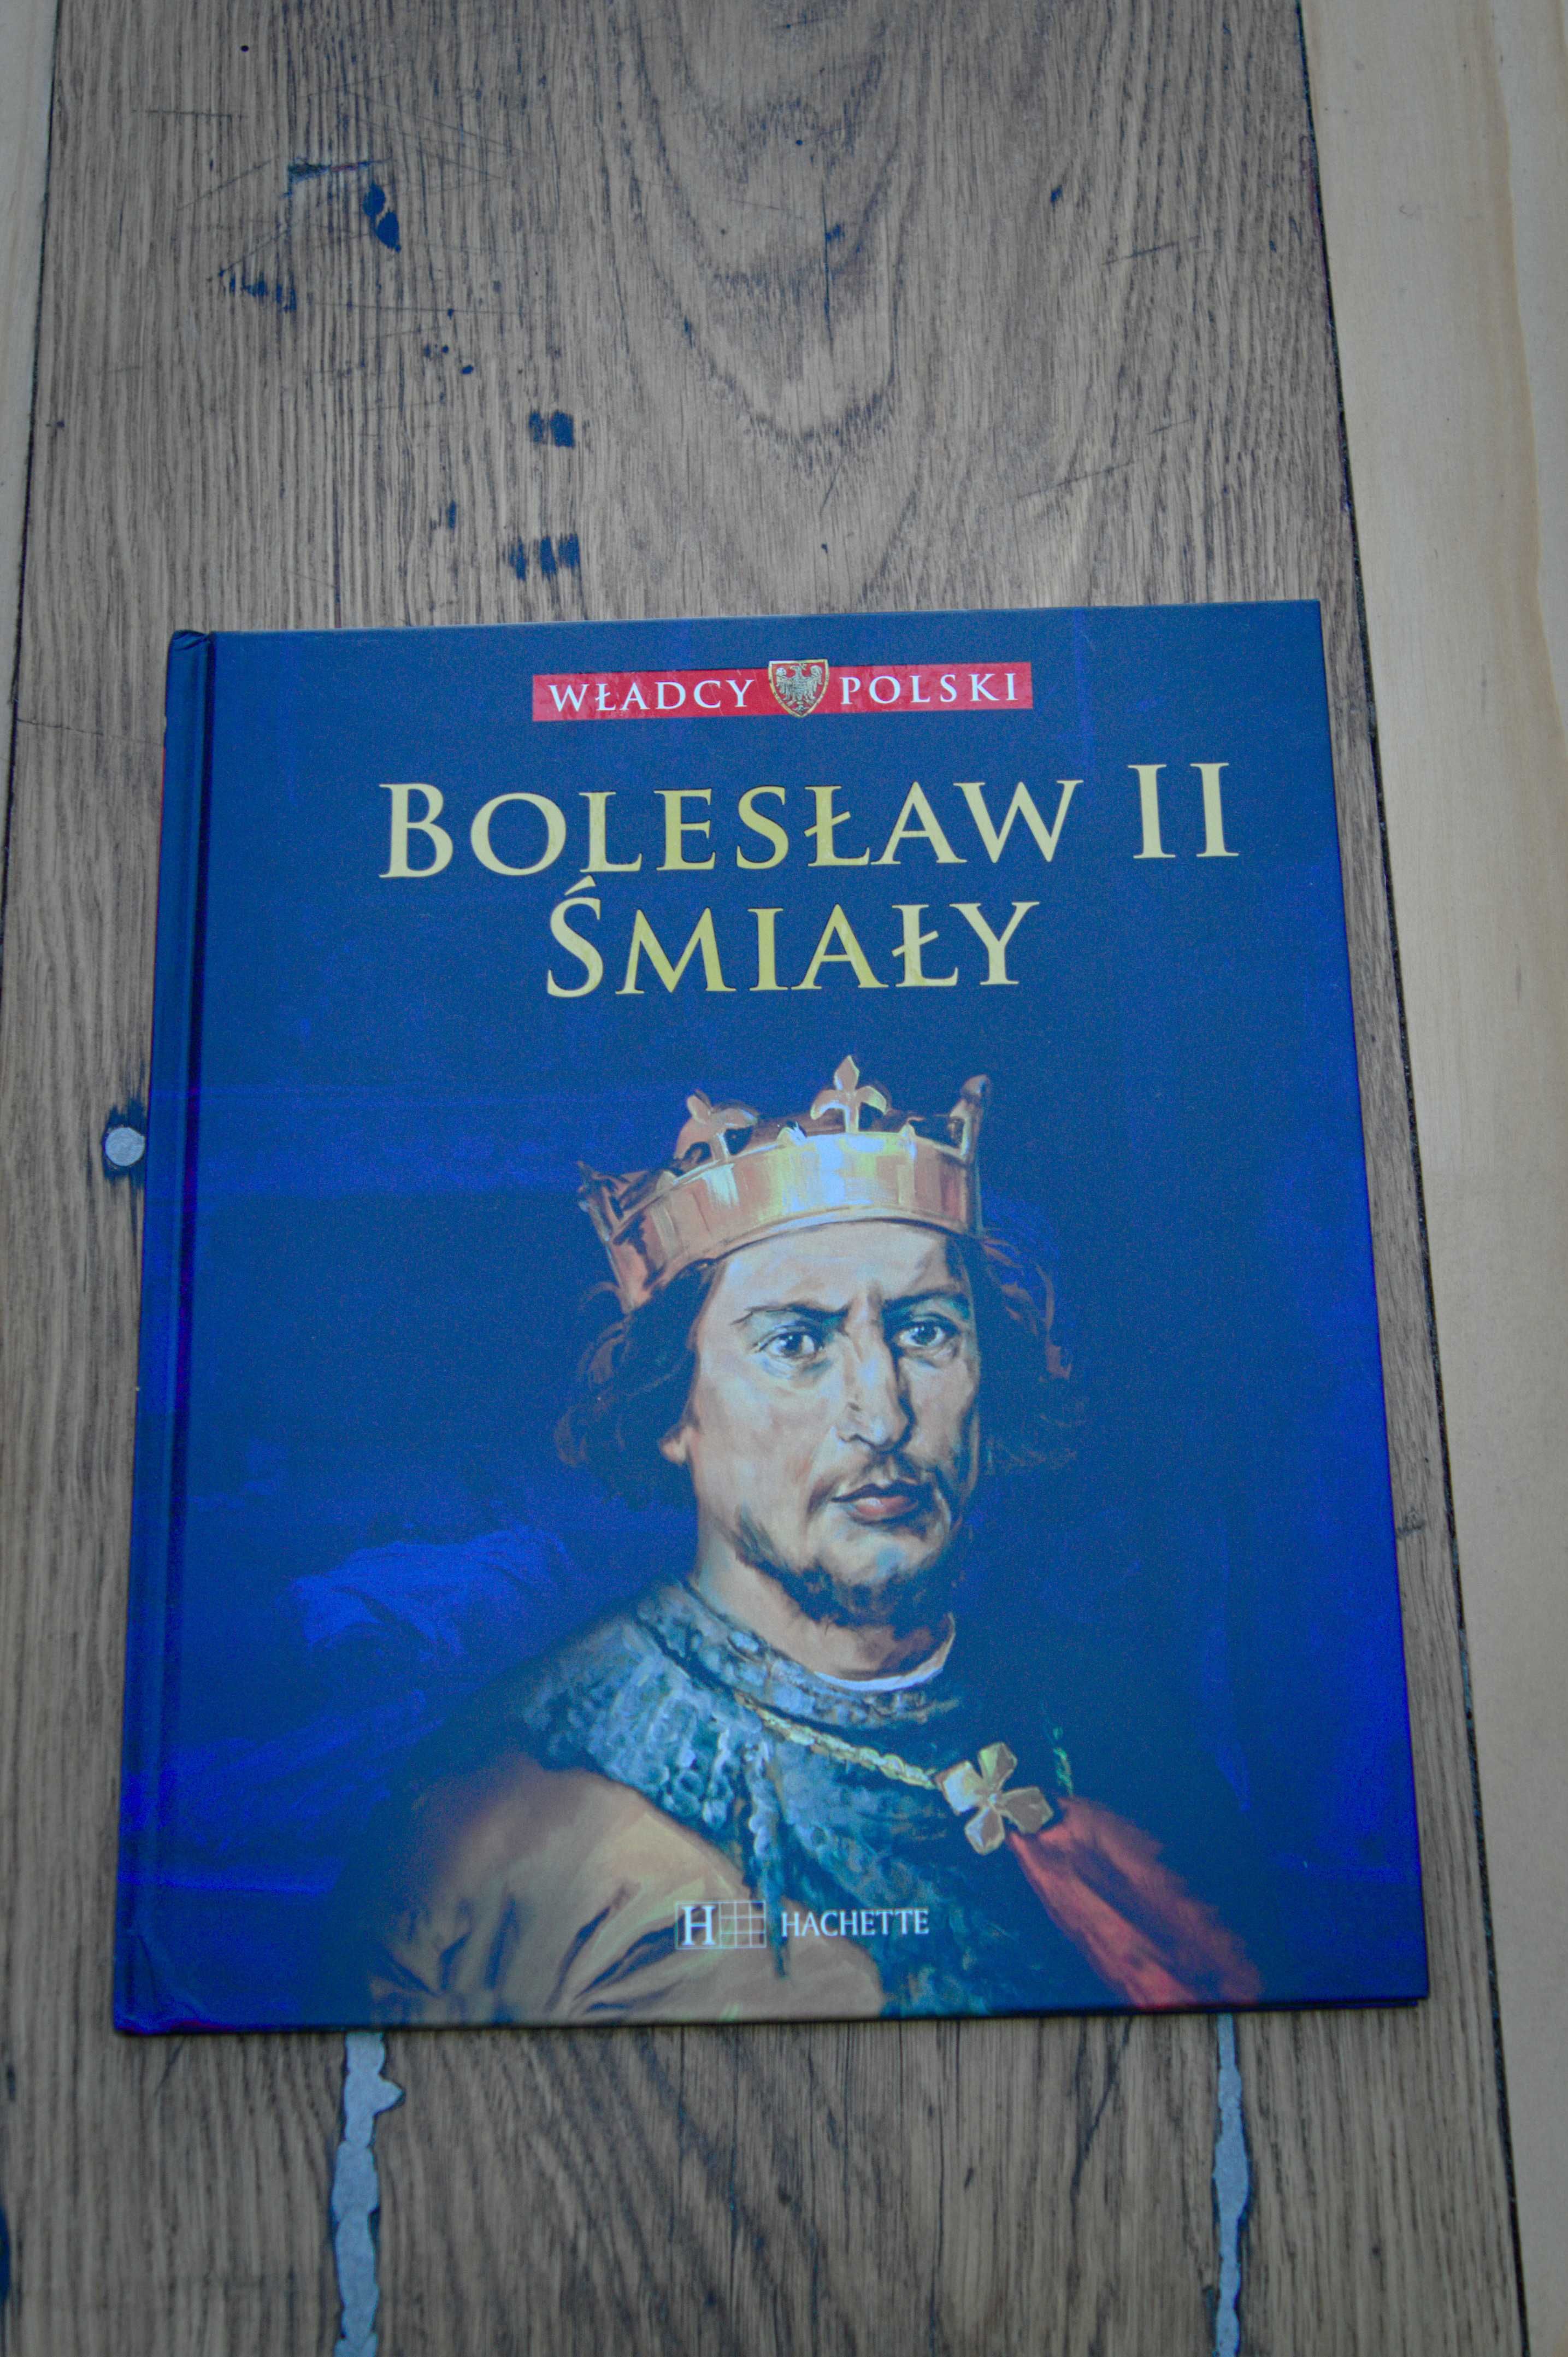 Zestaw książek "Władcy Polski" - części 3-5